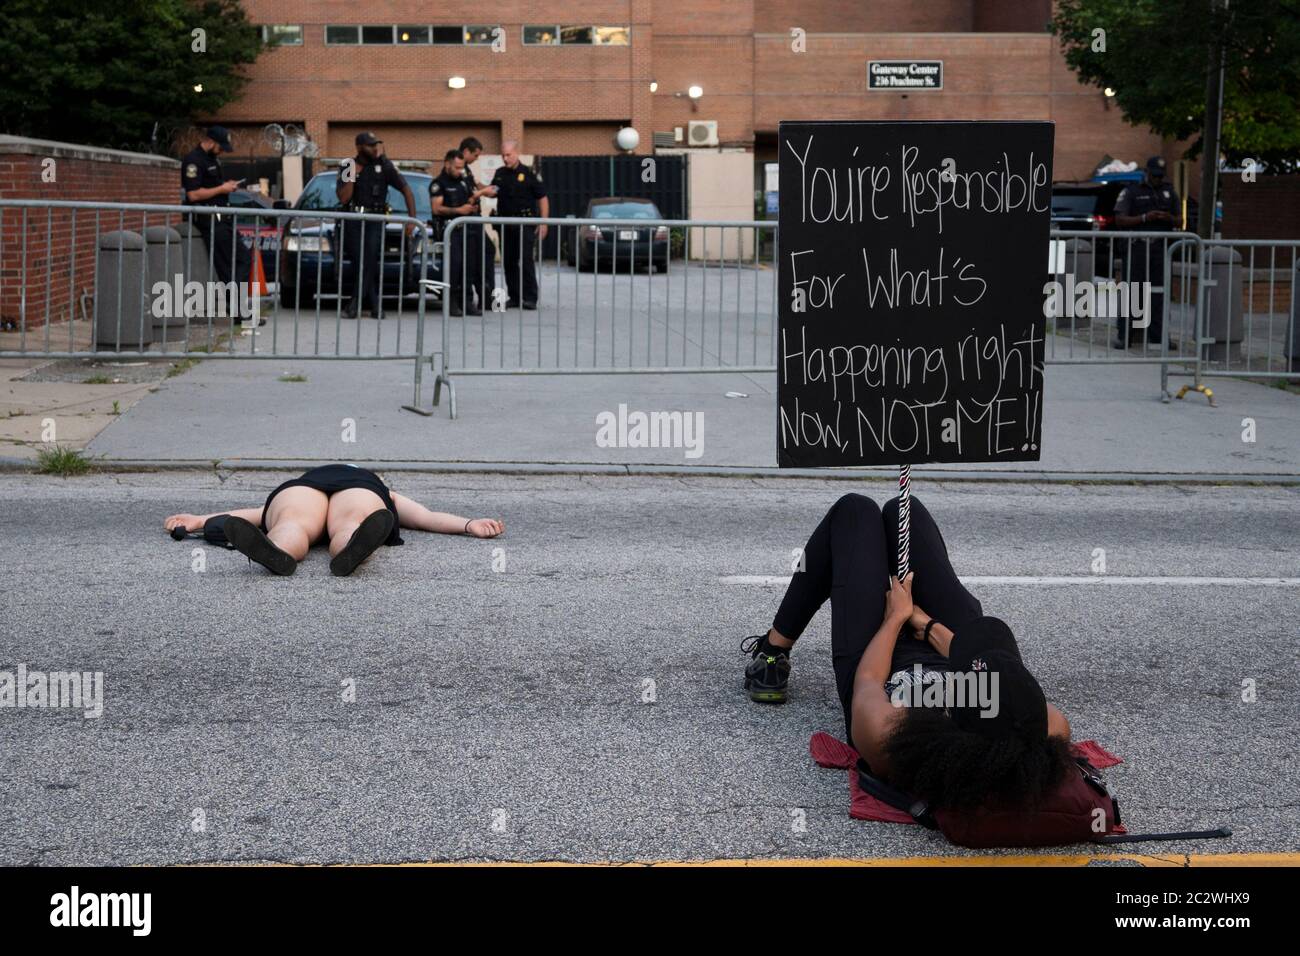 Atlanta, Stati Uniti. 17 Giugno 2020. Il protesore ha un cartello che indica alla polizia di vedere, fuori dal quartier generale della polizia ad Atlanta, USA, durante la protesta Die-in per le vite nere. Credit: Michah casella/Alamy Live News. Foto Stock